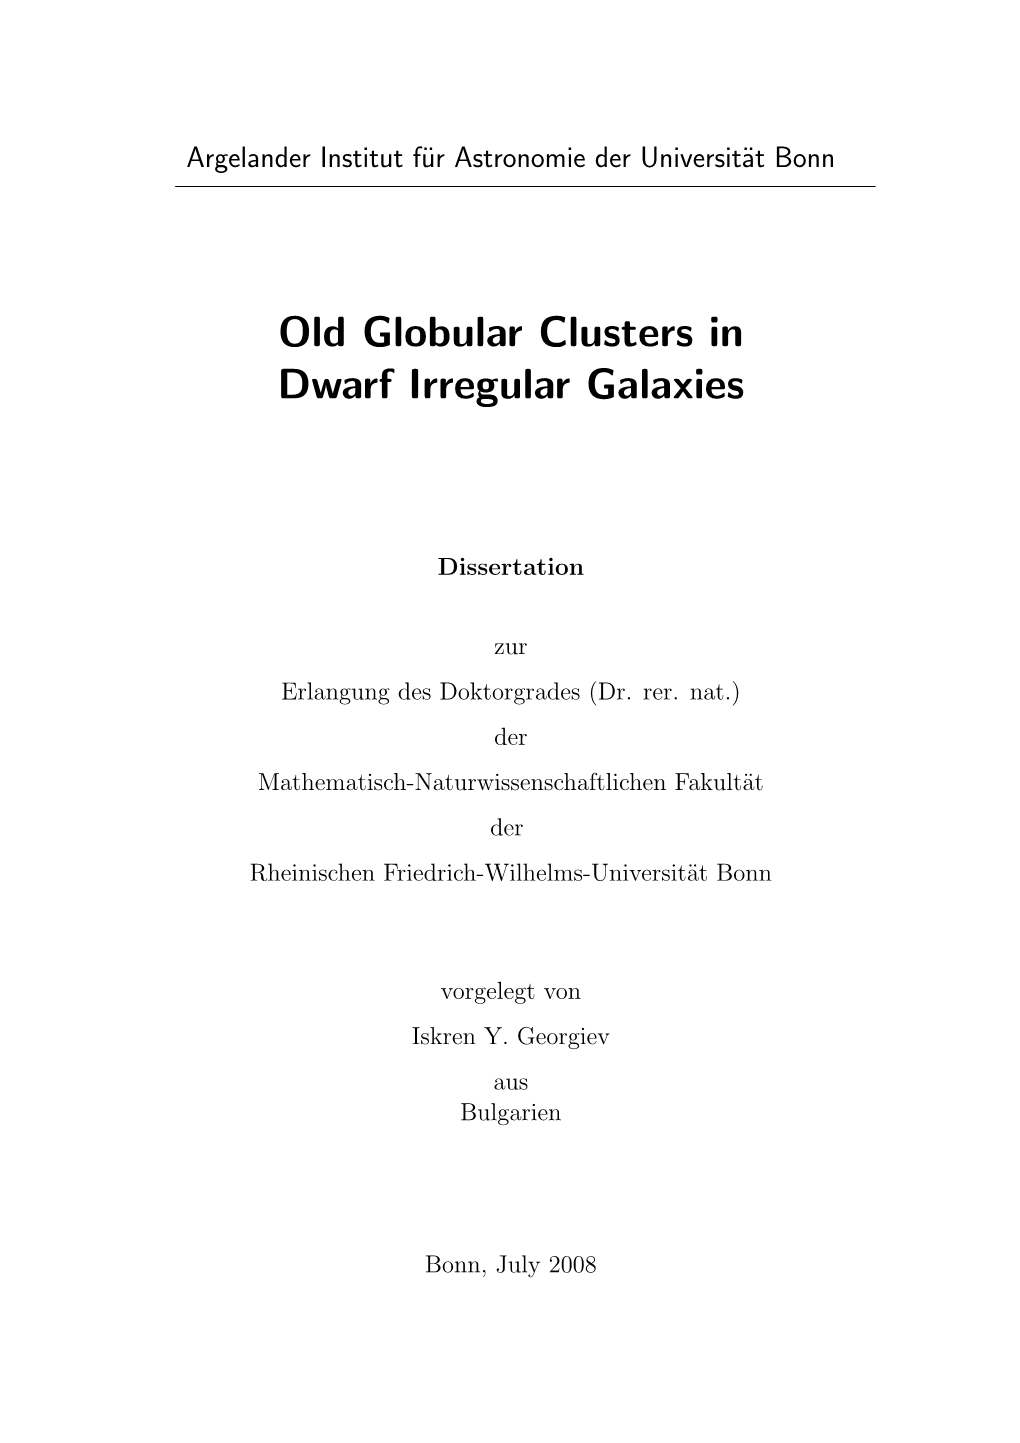 Old Globular Clusters in Dwarf Irregular Galaxies